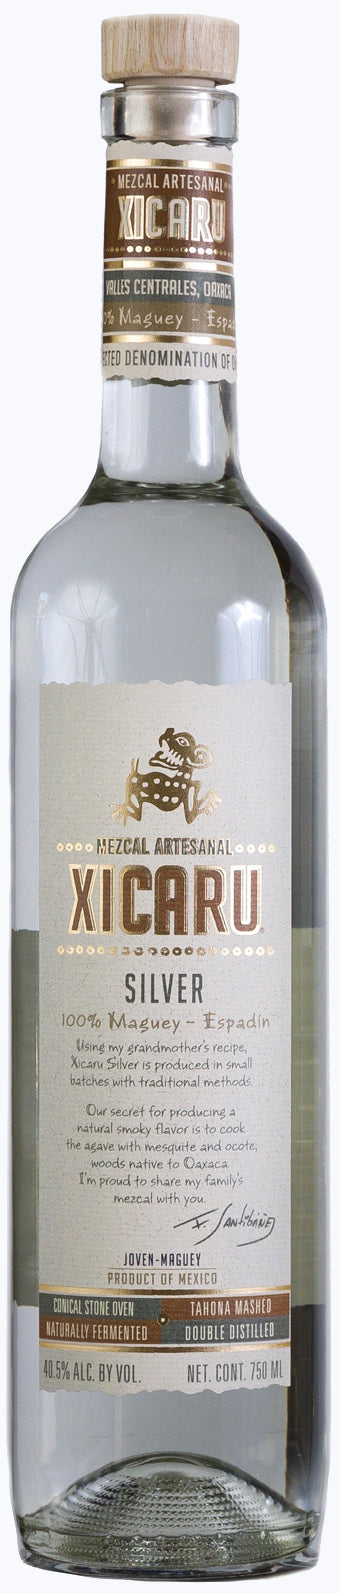 XICARU SILVER MEZCAL - Bk Wine Depot Corp